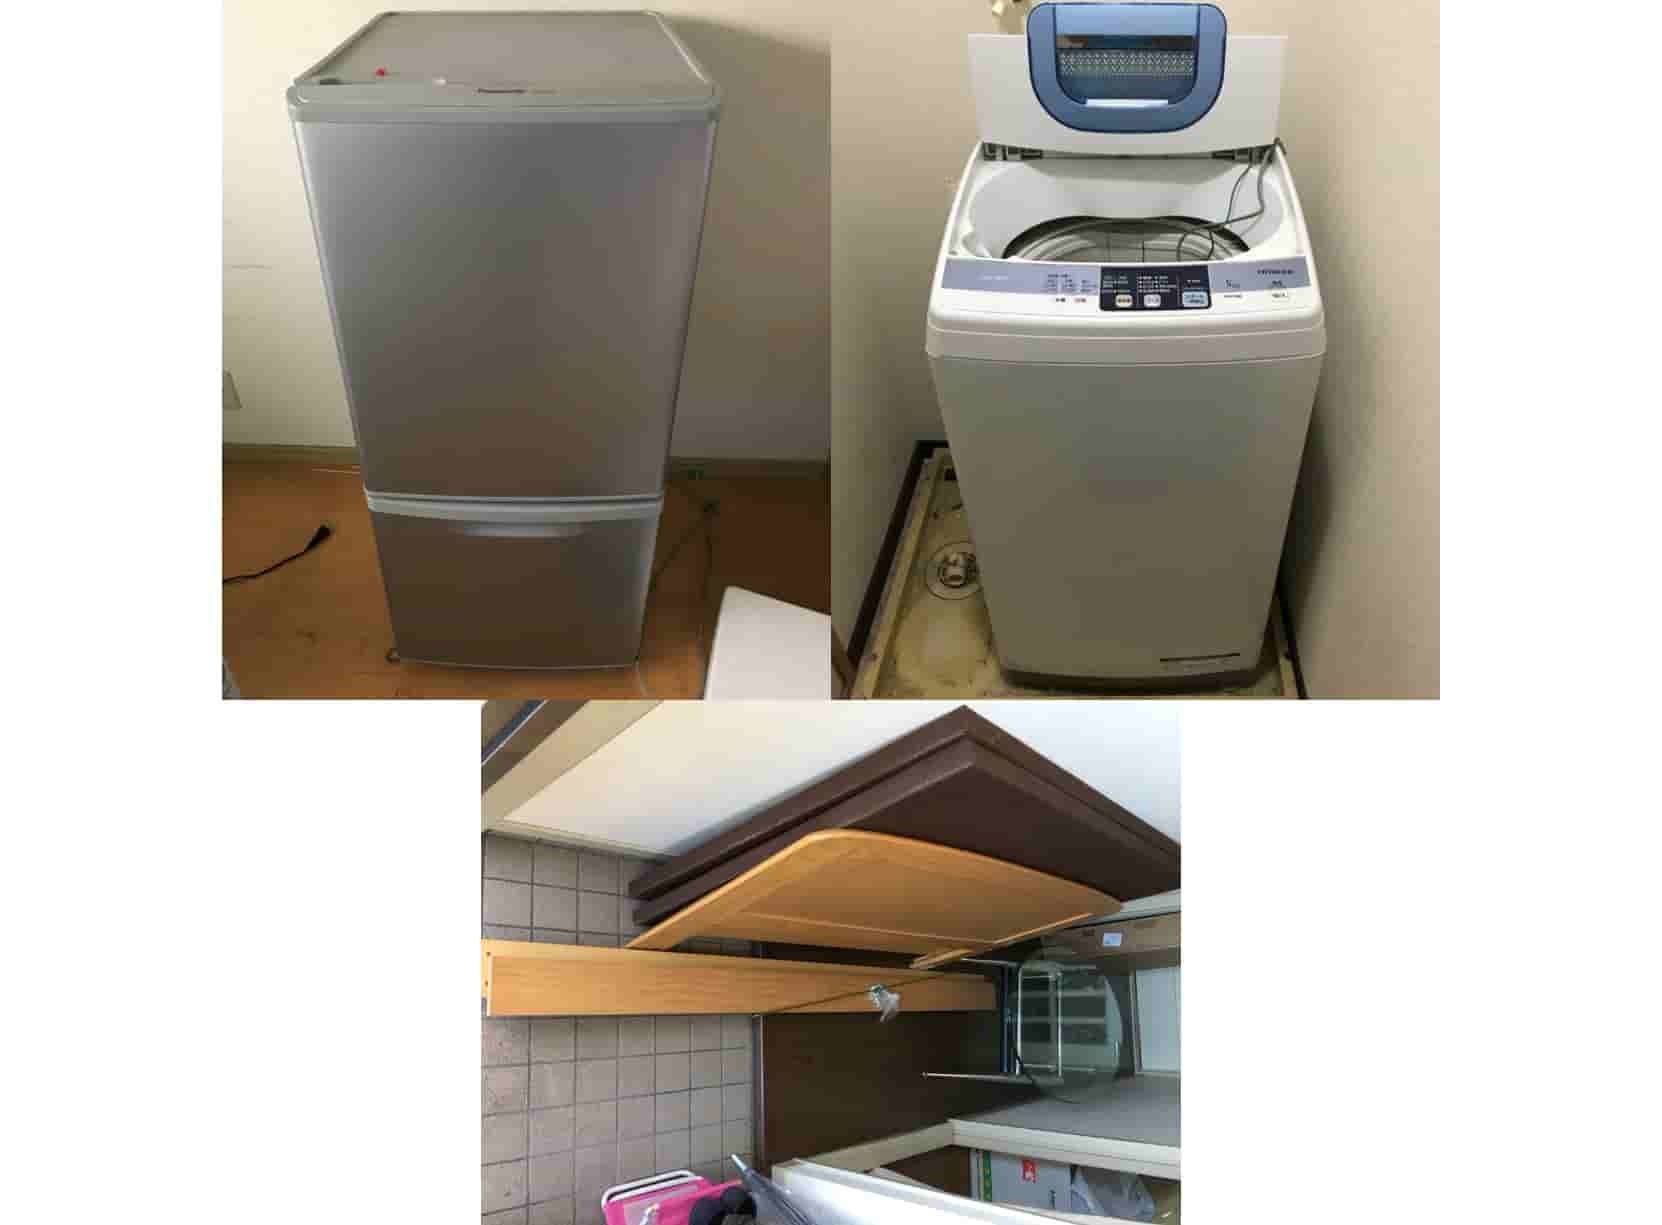 岩倉市M様の家具や洗濯機の処分と冷蔵庫の買取画像